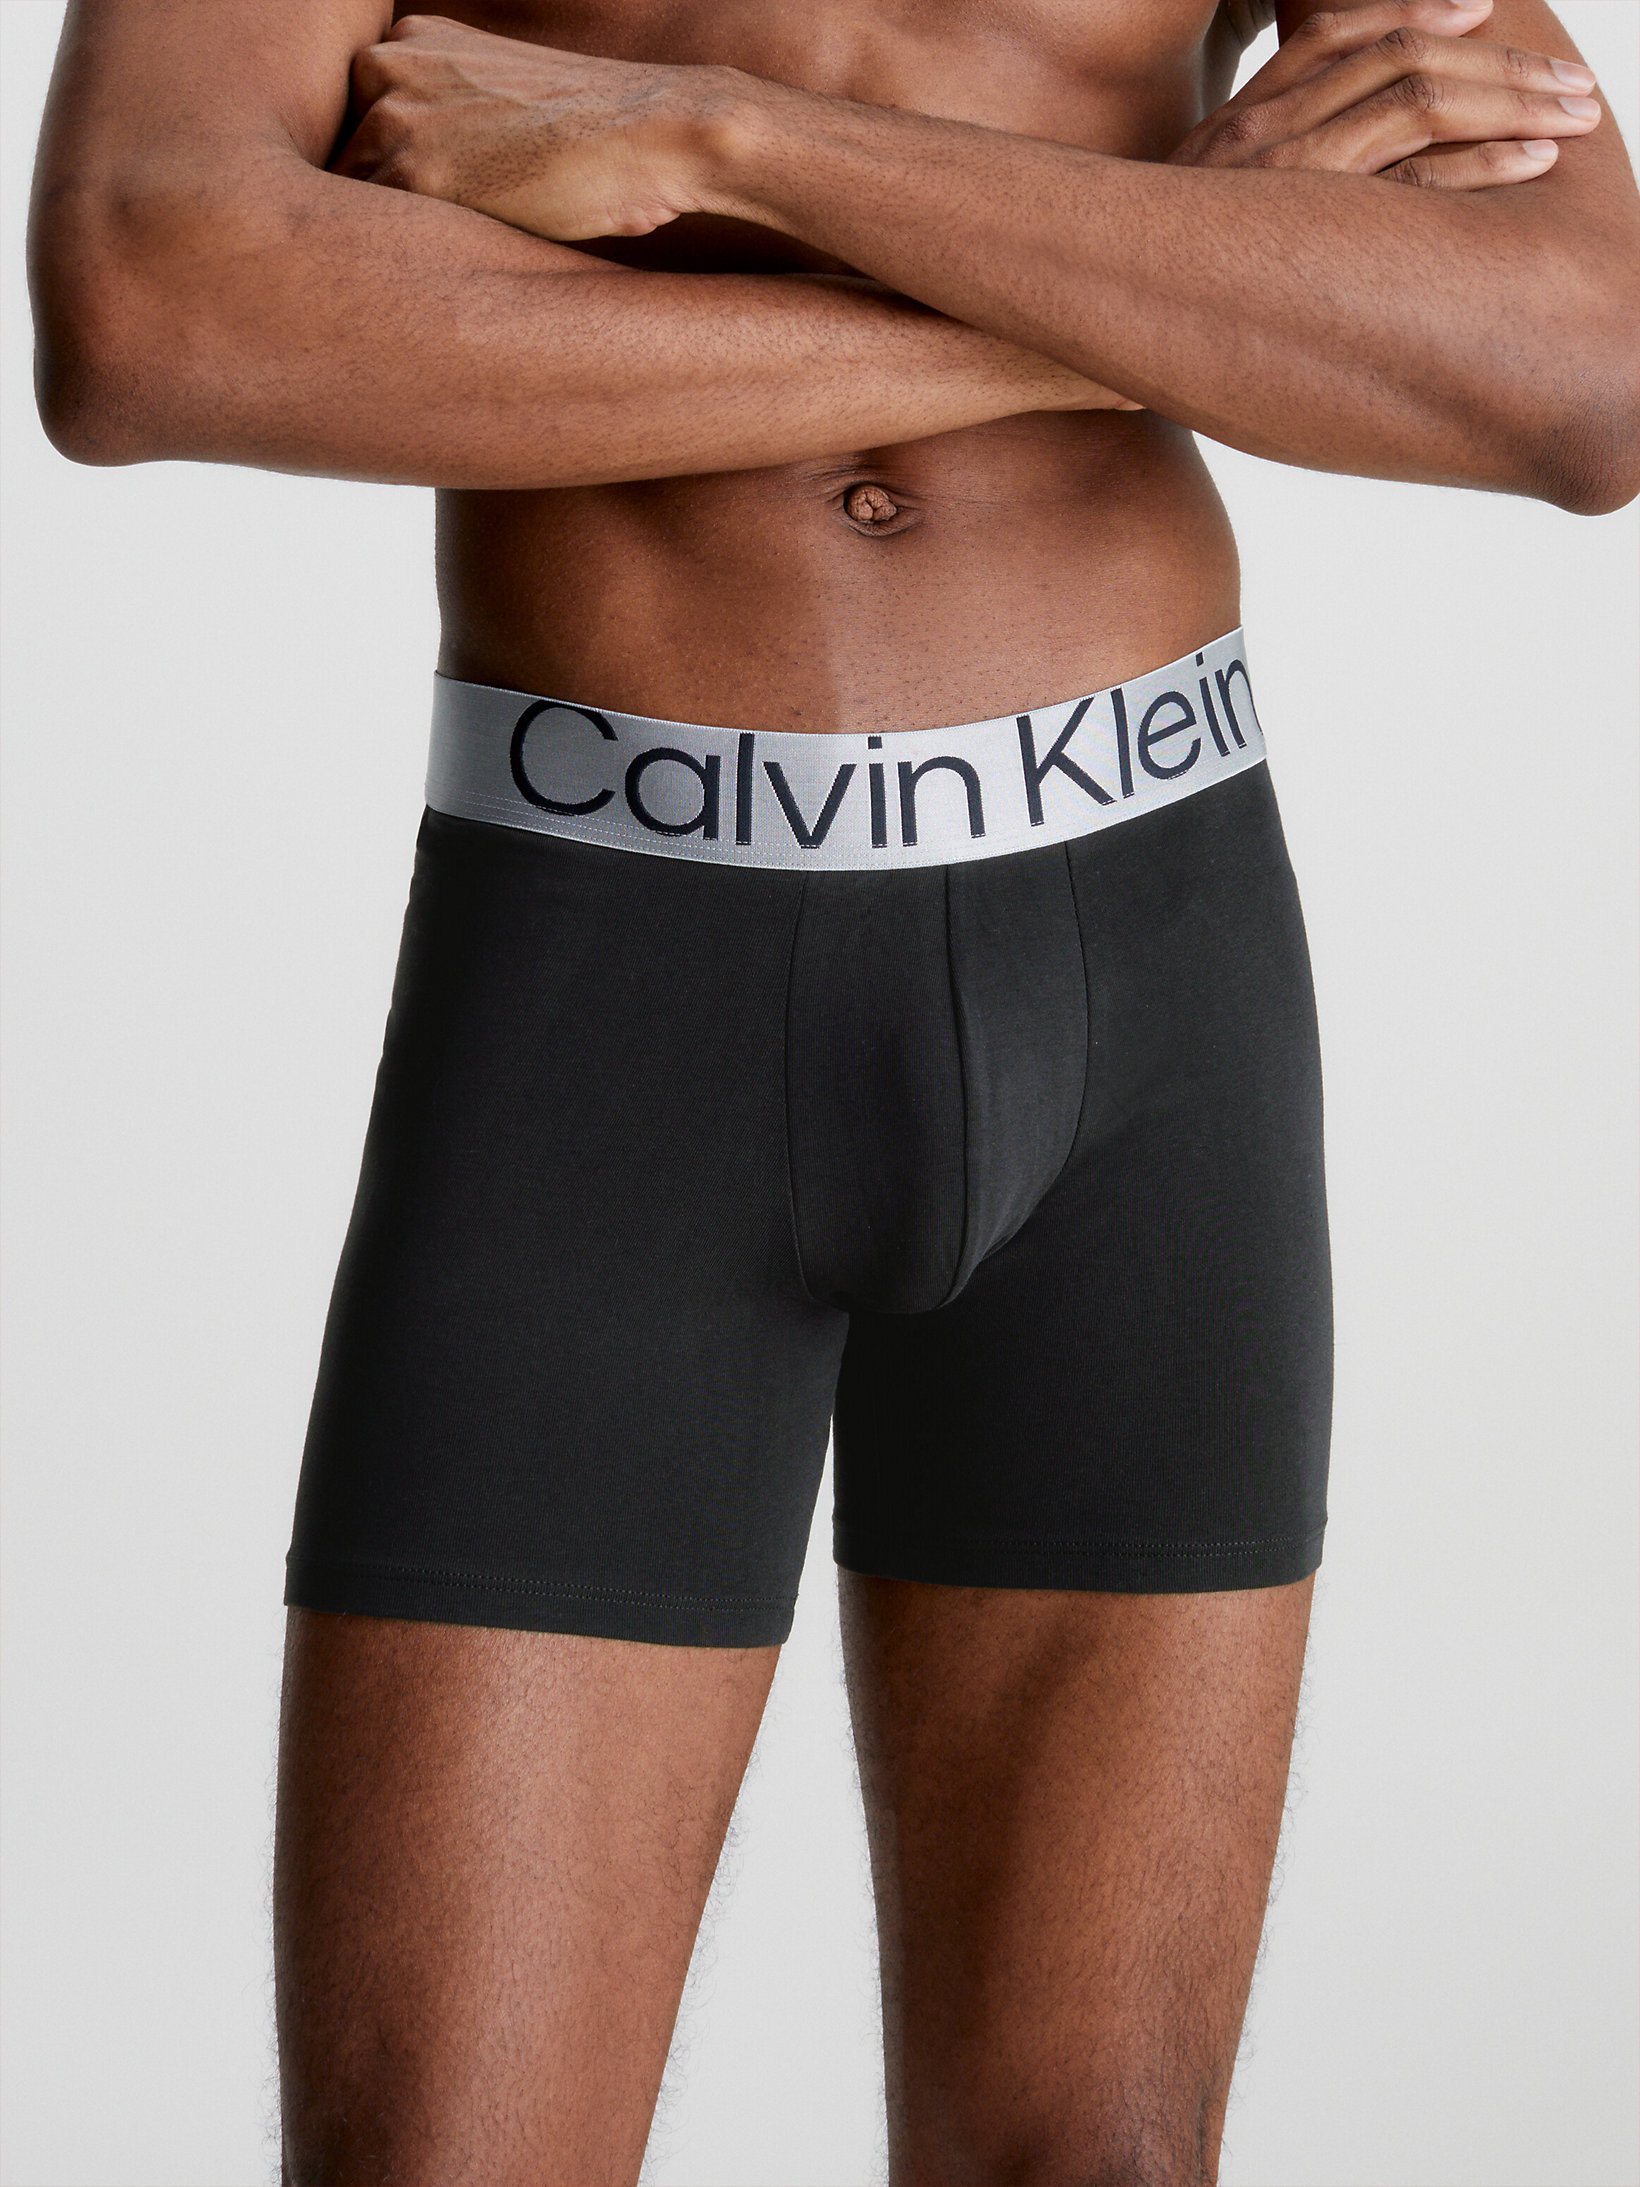 Steel Cotton Calvin Klein Uomo Abbigliamento Intimo Boxer shorts Boxer shorts aderenti Boxer aderenti lunghi confezione da 3 